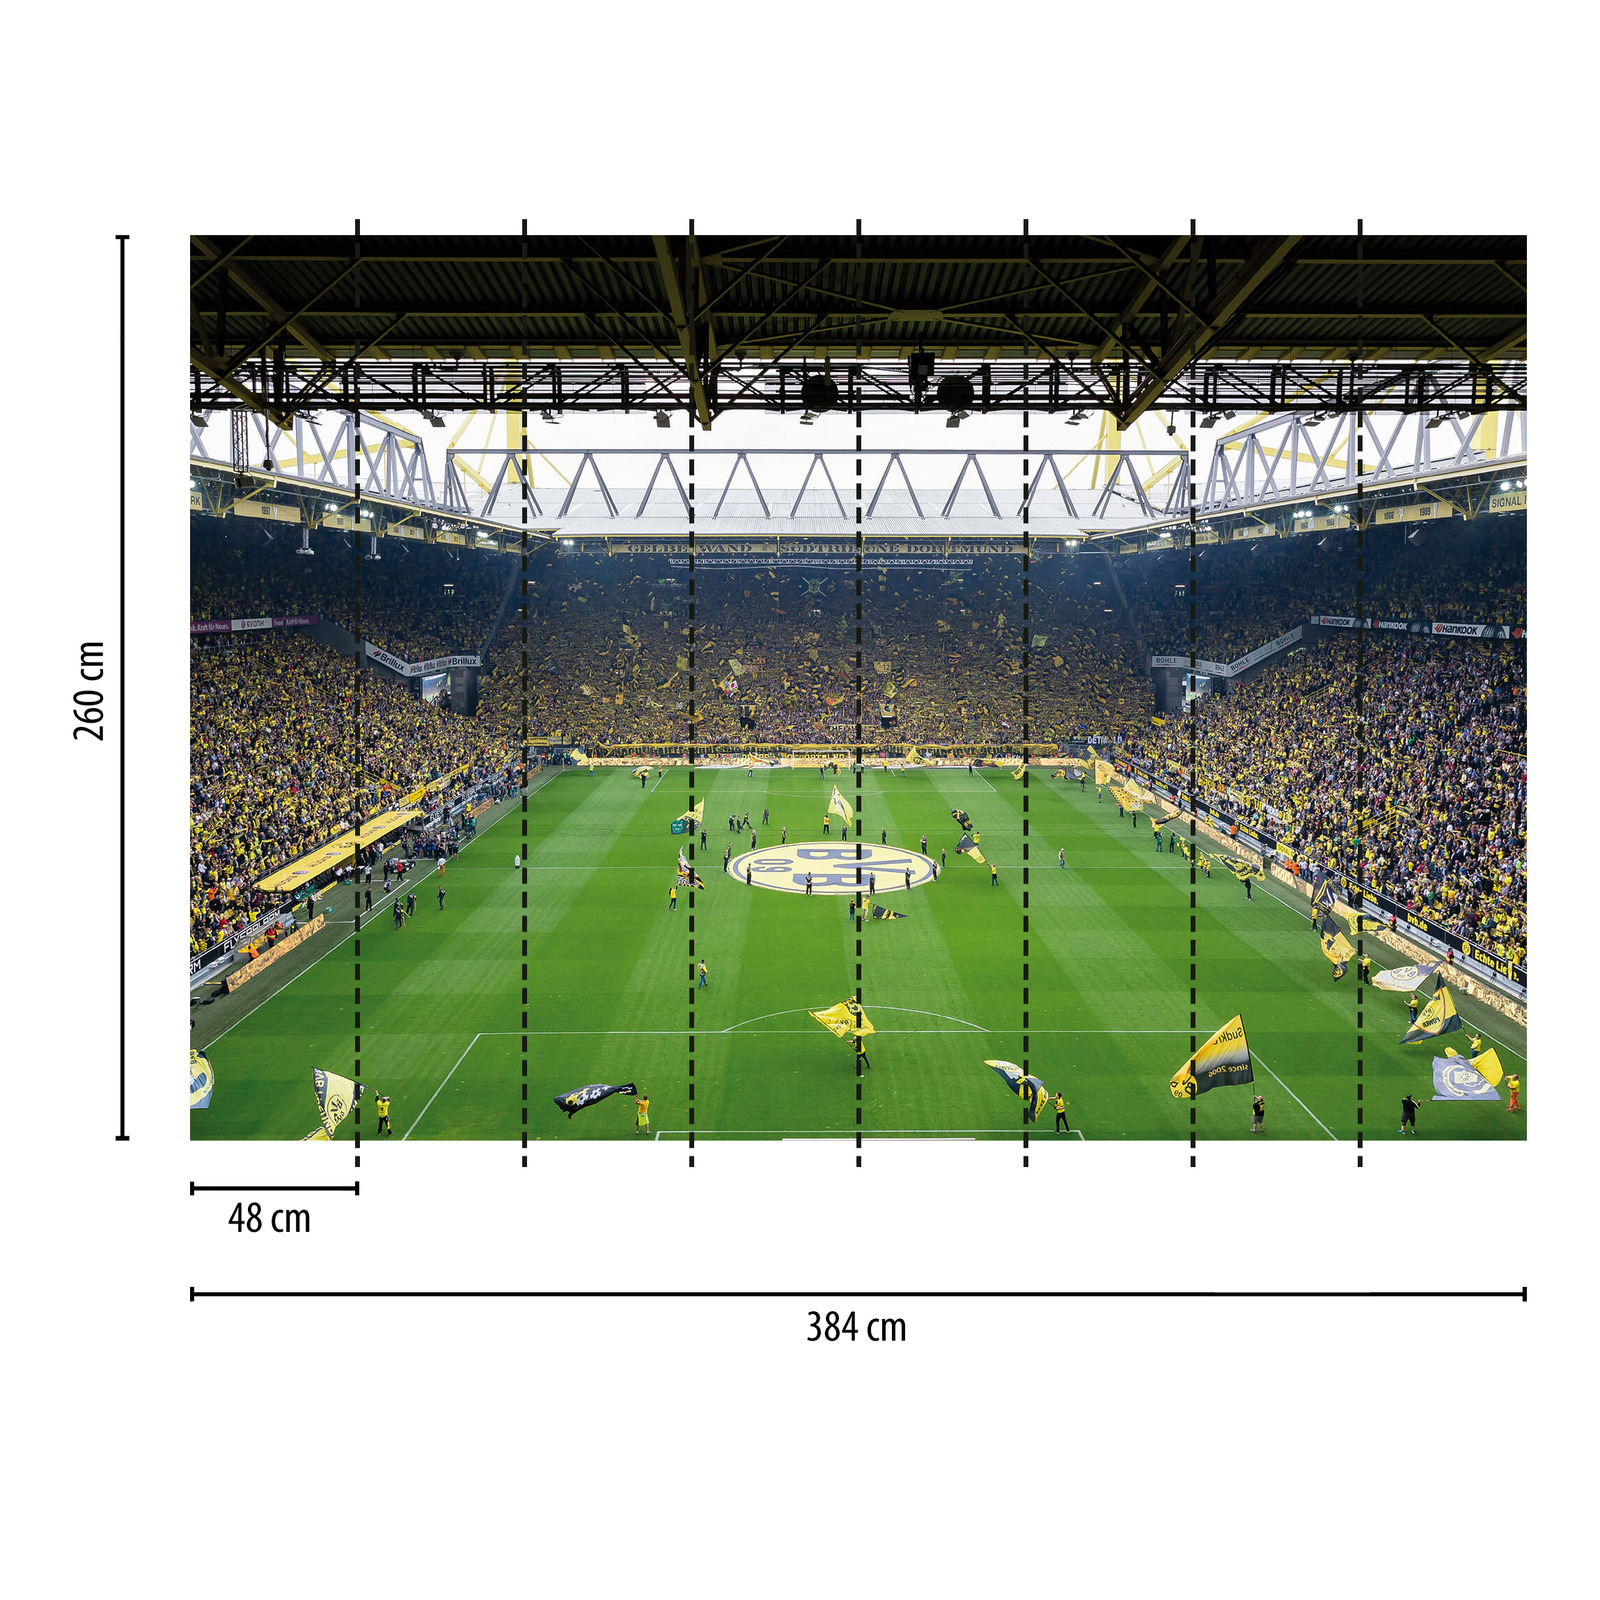             Papier peint panoramique BVB Stadion avec chorégraphie de supporters
        